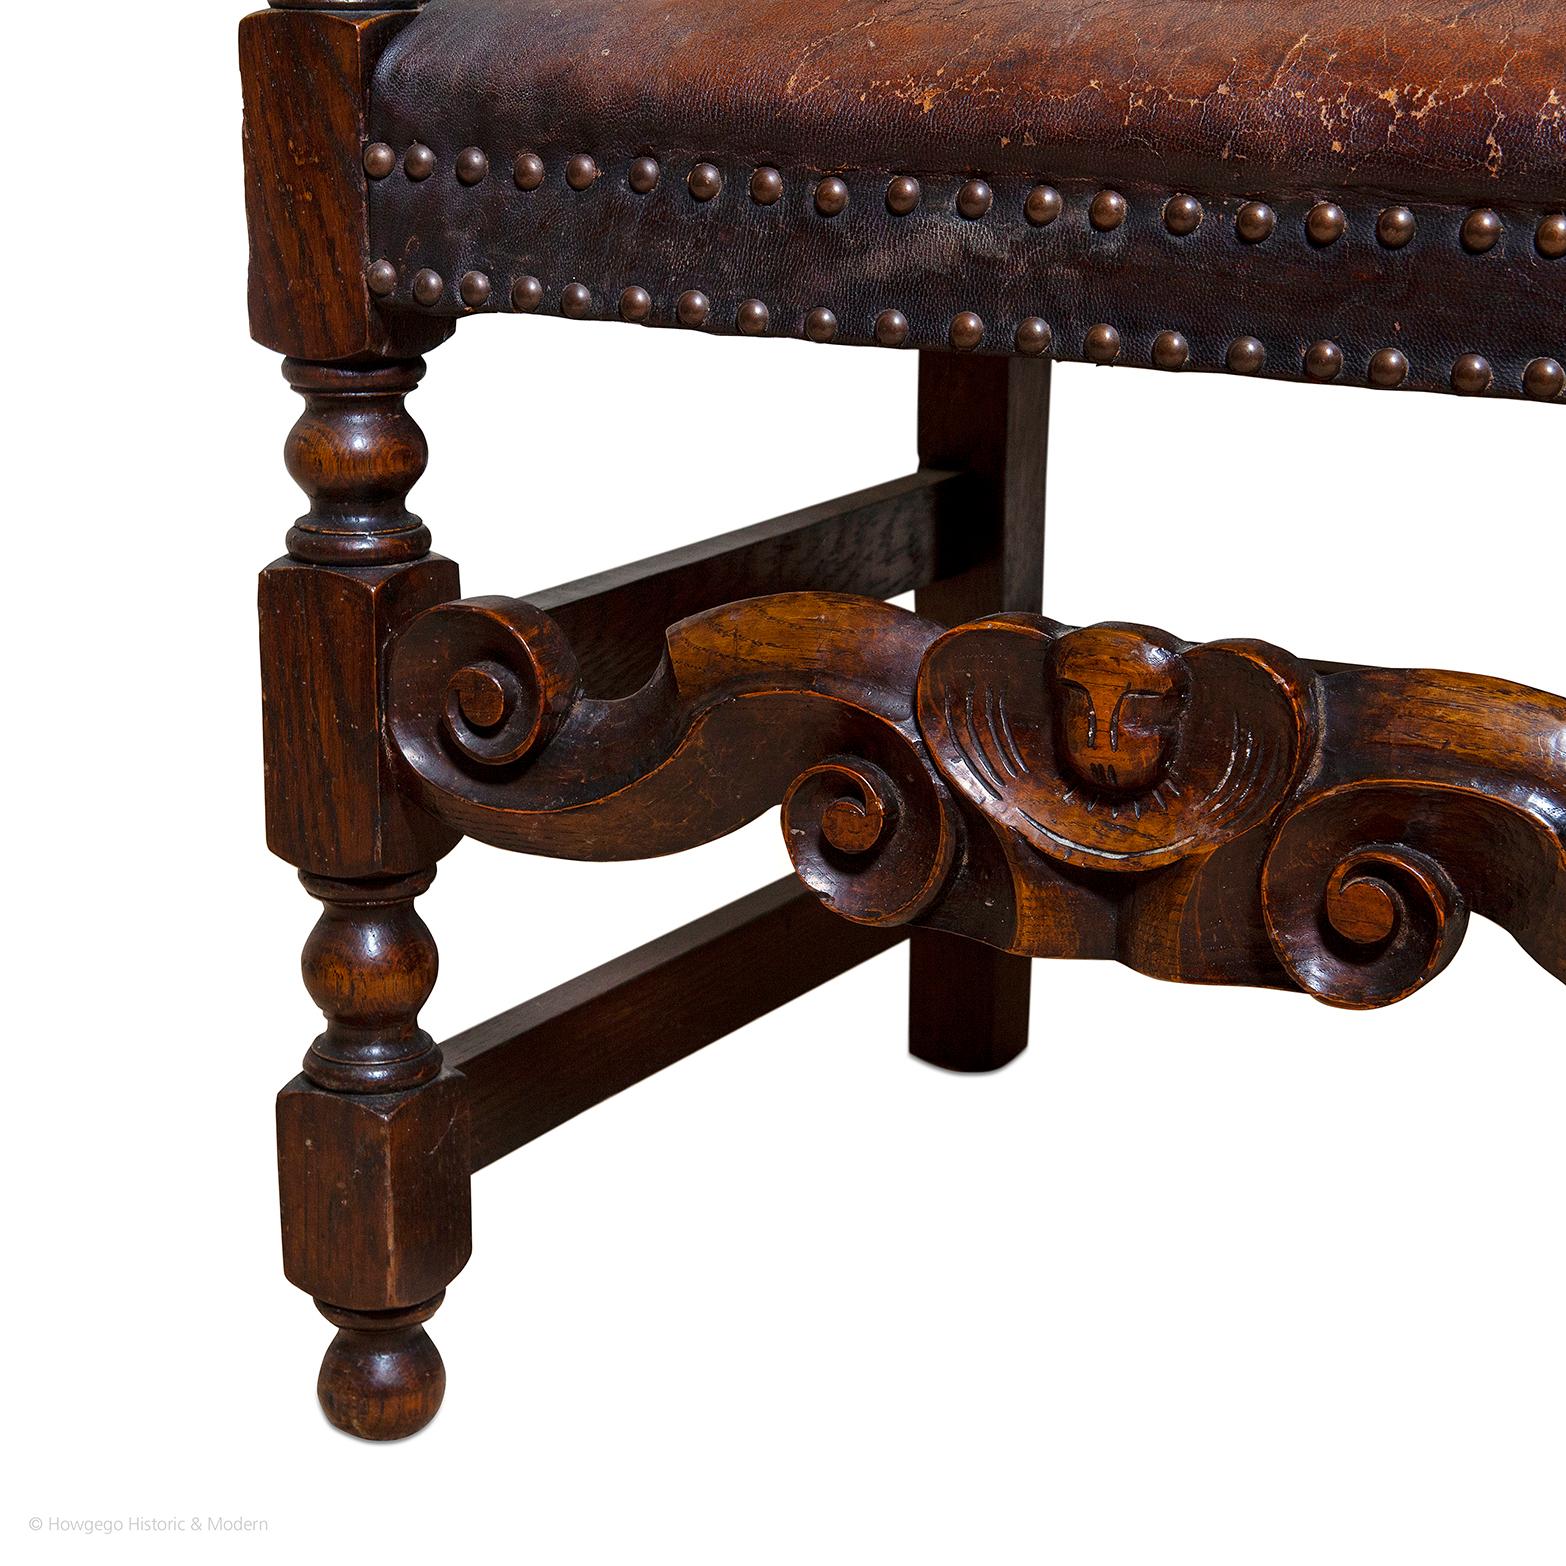 - Fauteuil attrayant qui confère un caractère d'époque à tout intérieur
- Robuste et adapté à un usage régulier
- Ce modèle de chaise a été fabriqué en grand nombre au milieu du XVIIe siècle, mais peu d'entre elles ont survécu à cette période.